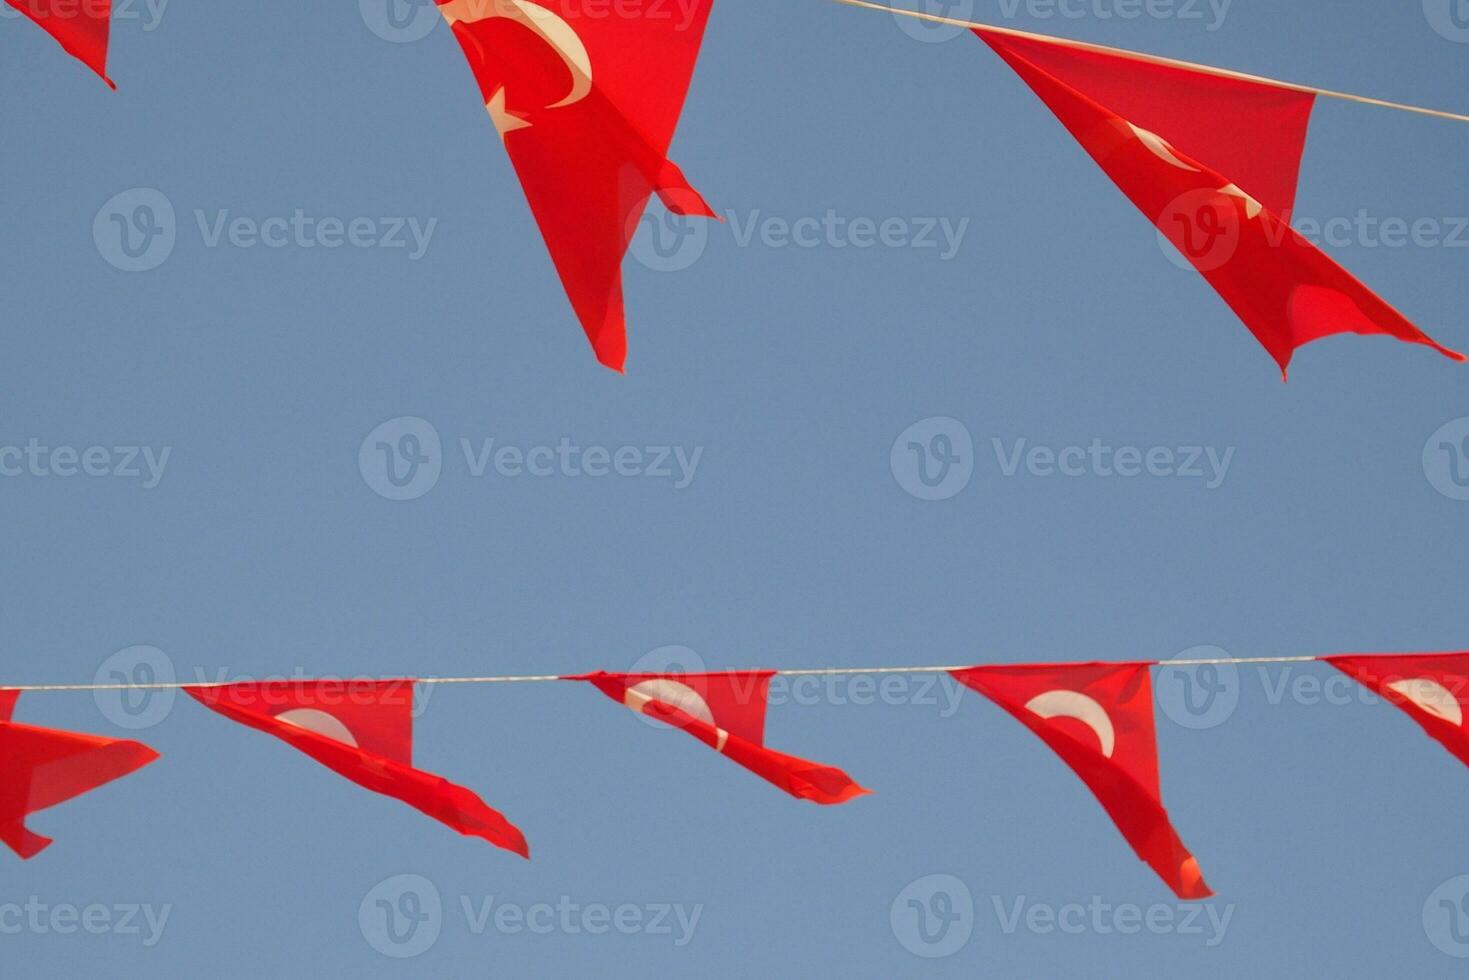 turc drapeau agitant dans le vent sur une été chaud journée contre le ciel photo